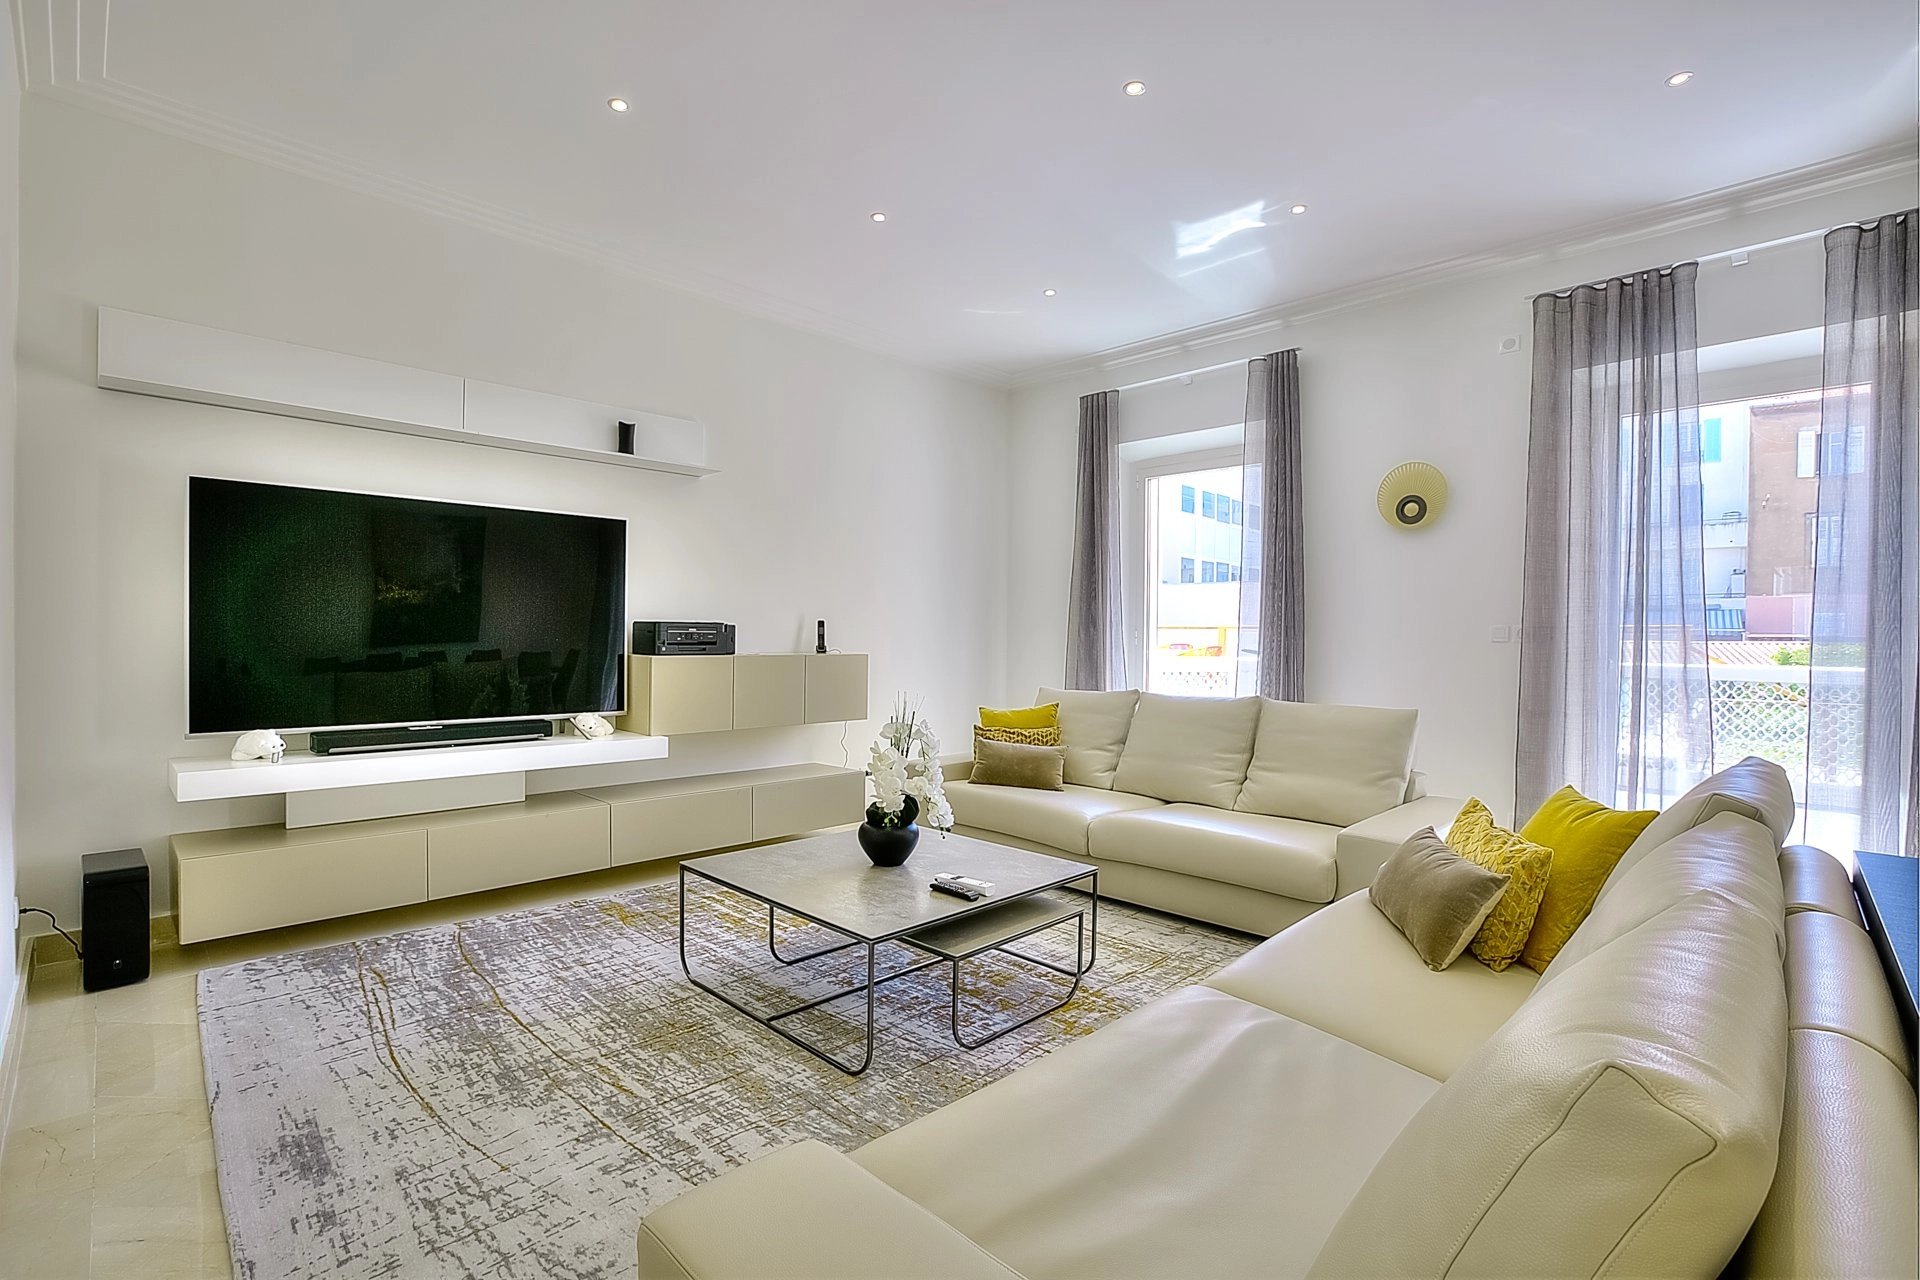 Living-room Tile